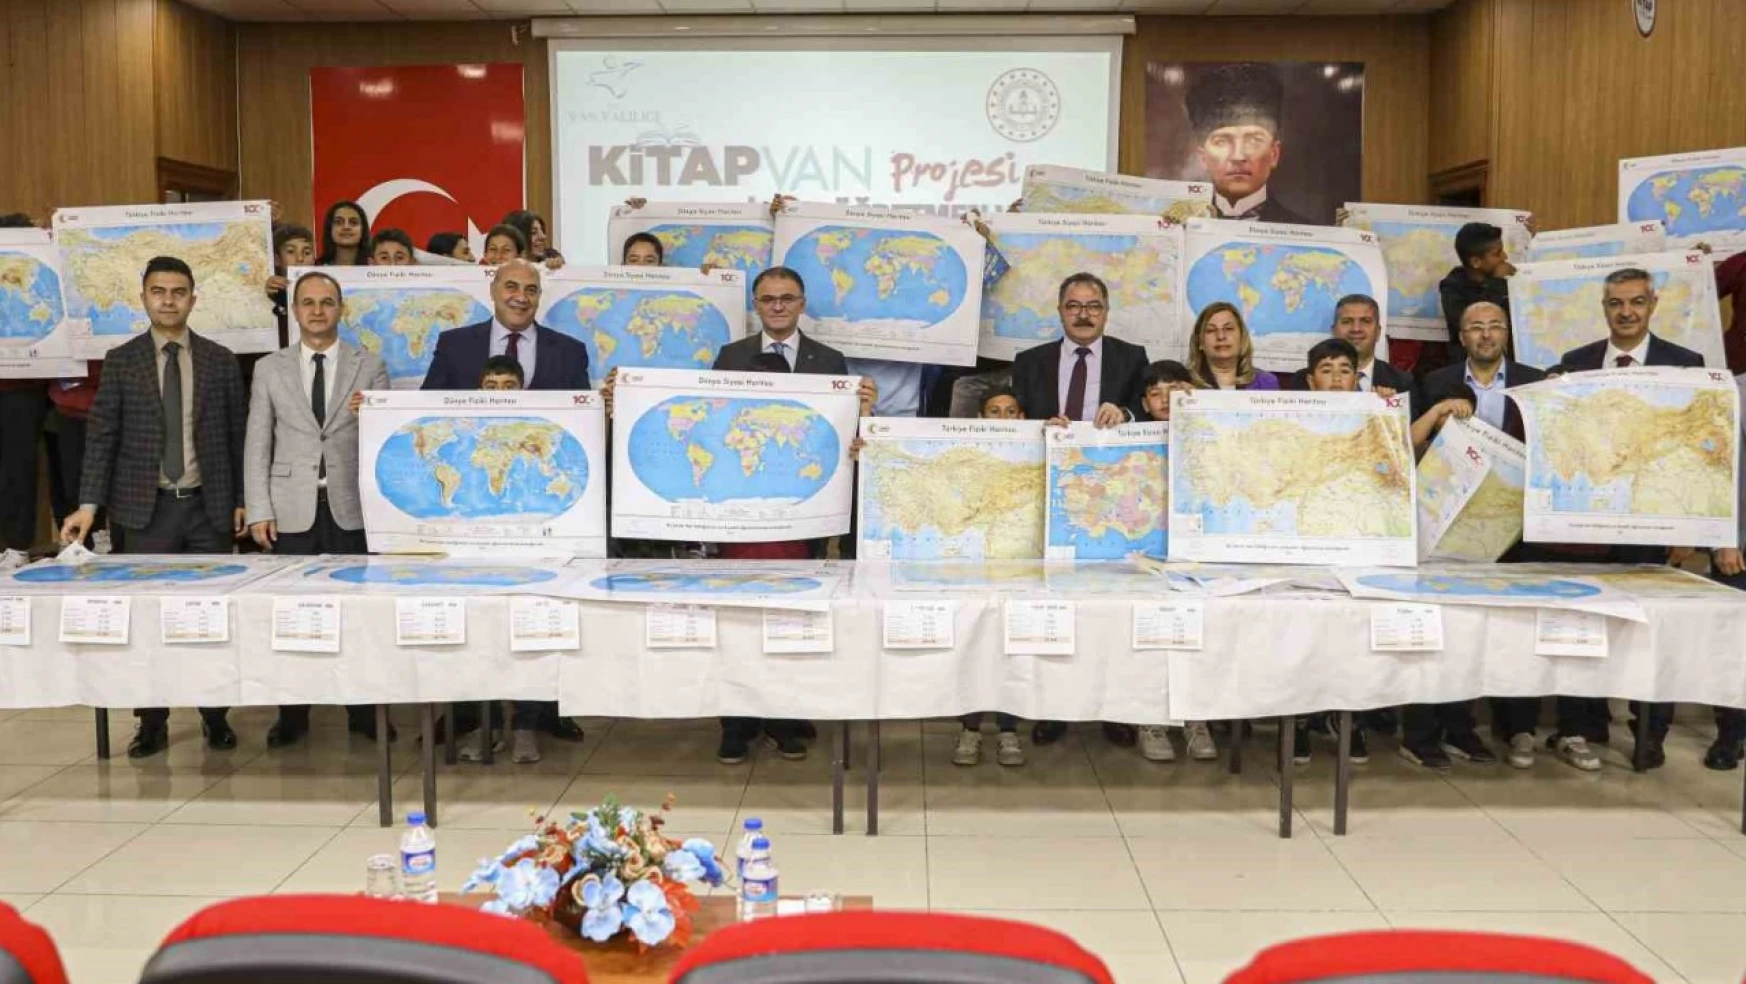 Van'da öğrencilere harita dağıtımı yapıldı